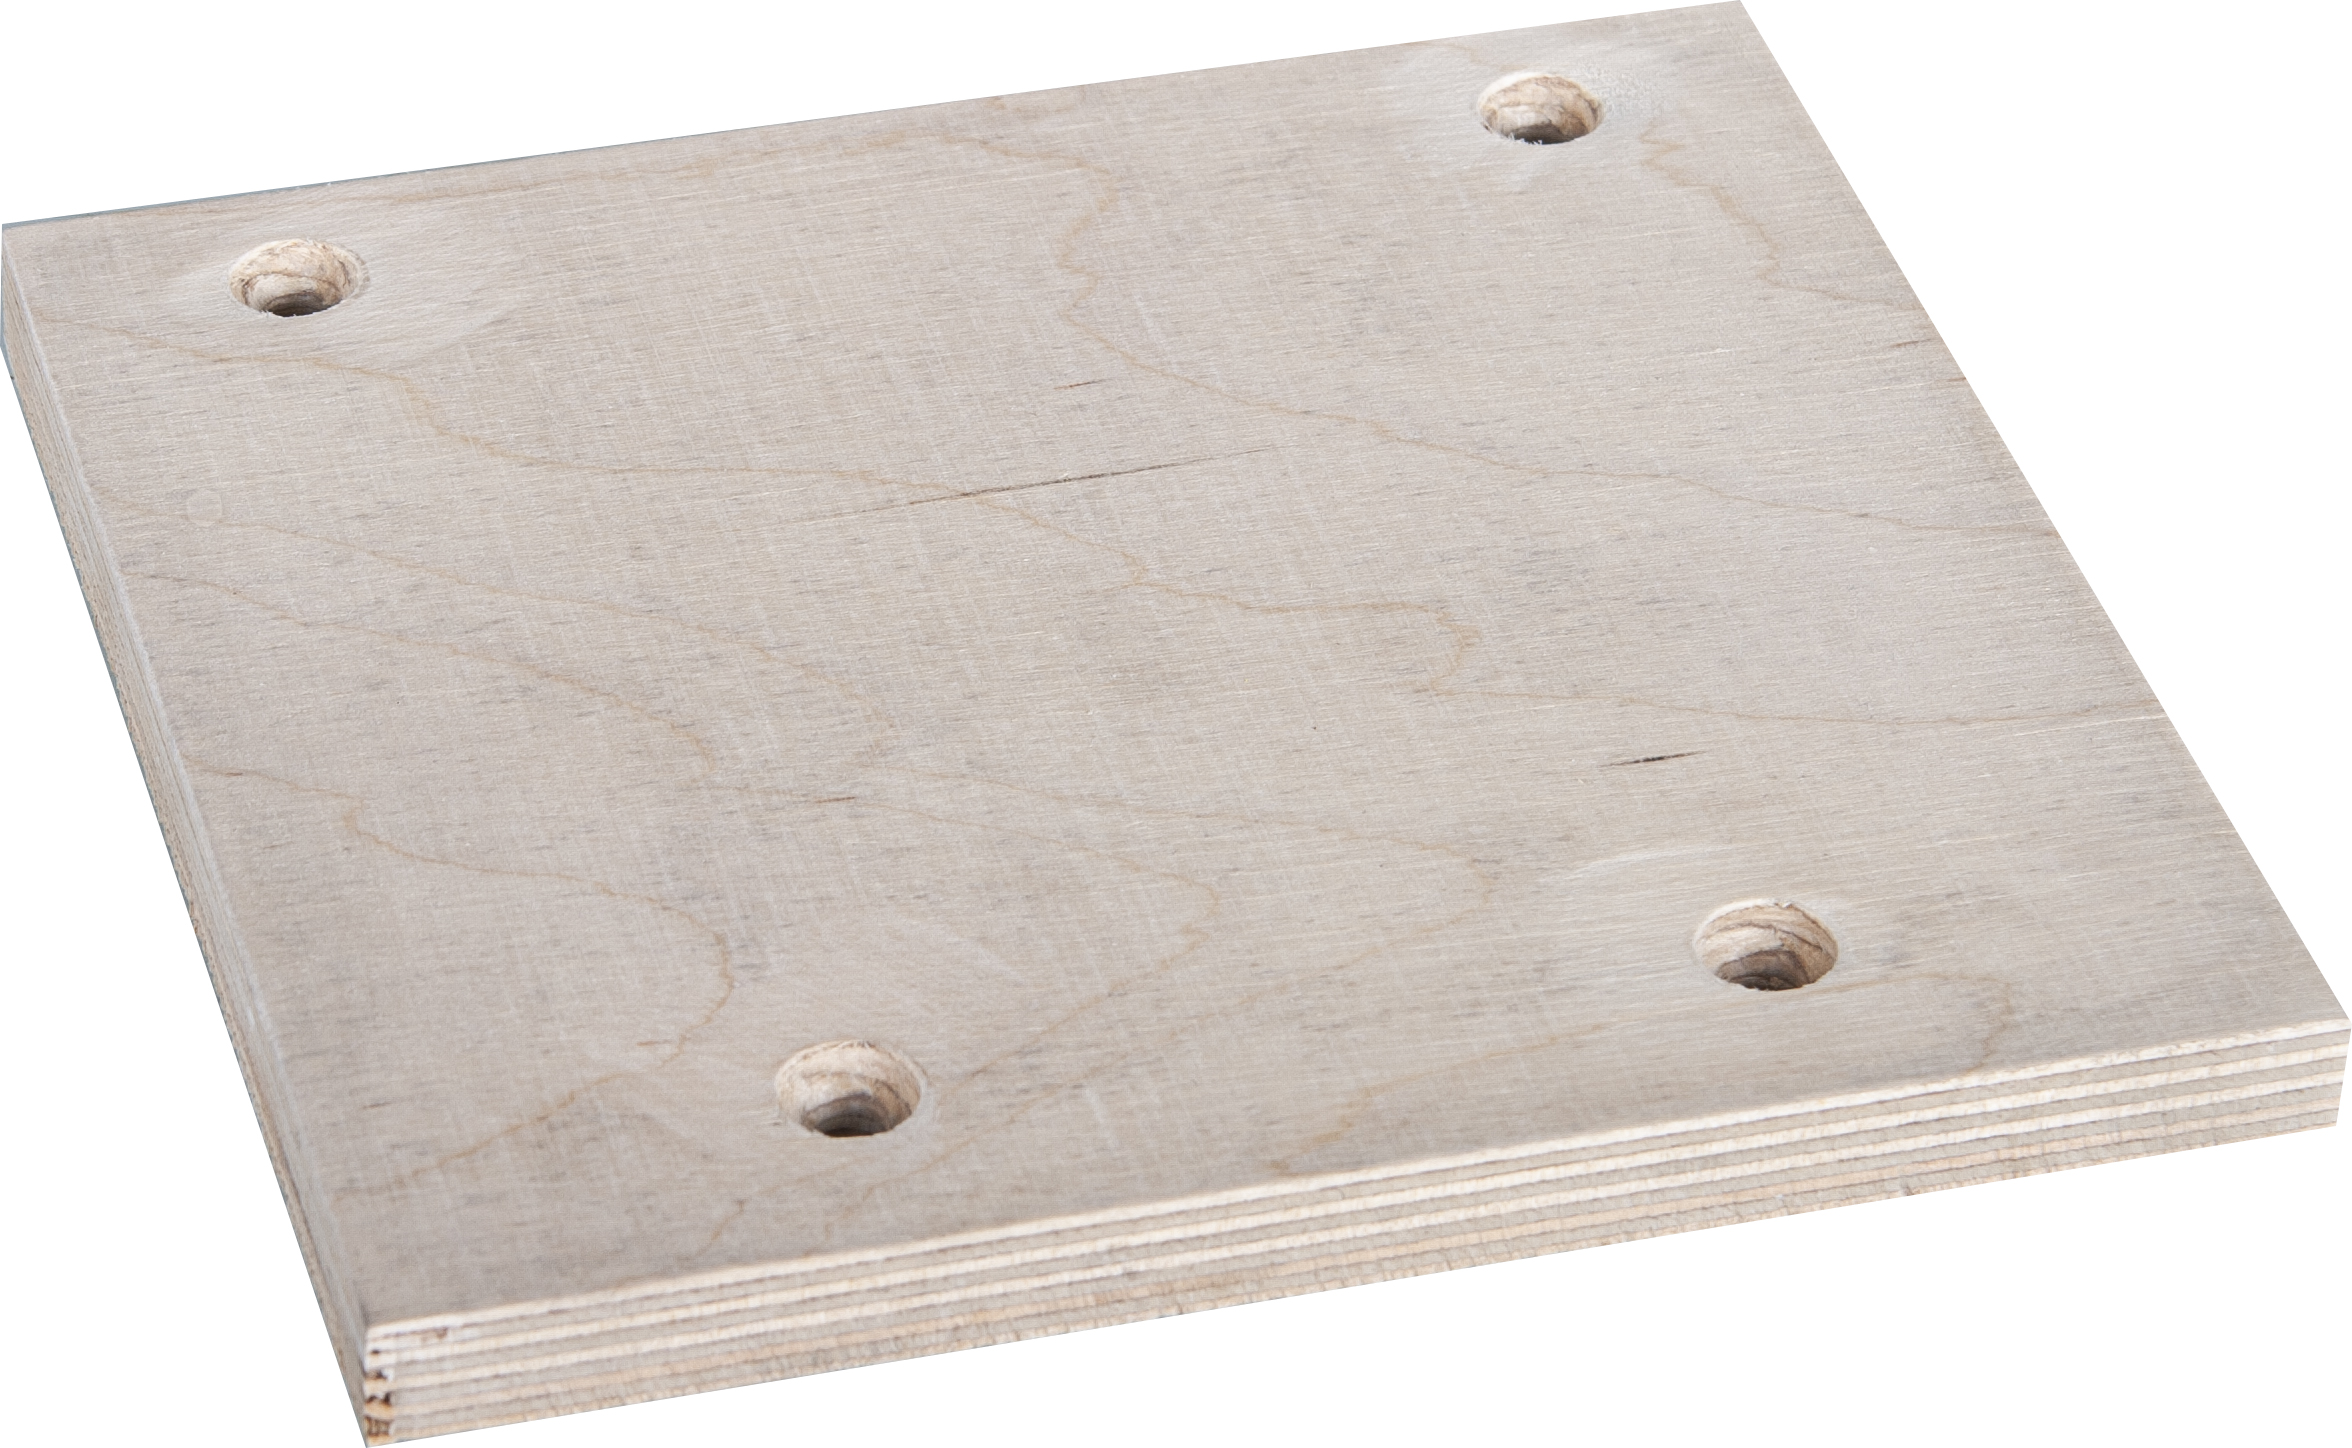 Holz-Platte 170x160mm für Grabmalplattengreifer GPM 1000